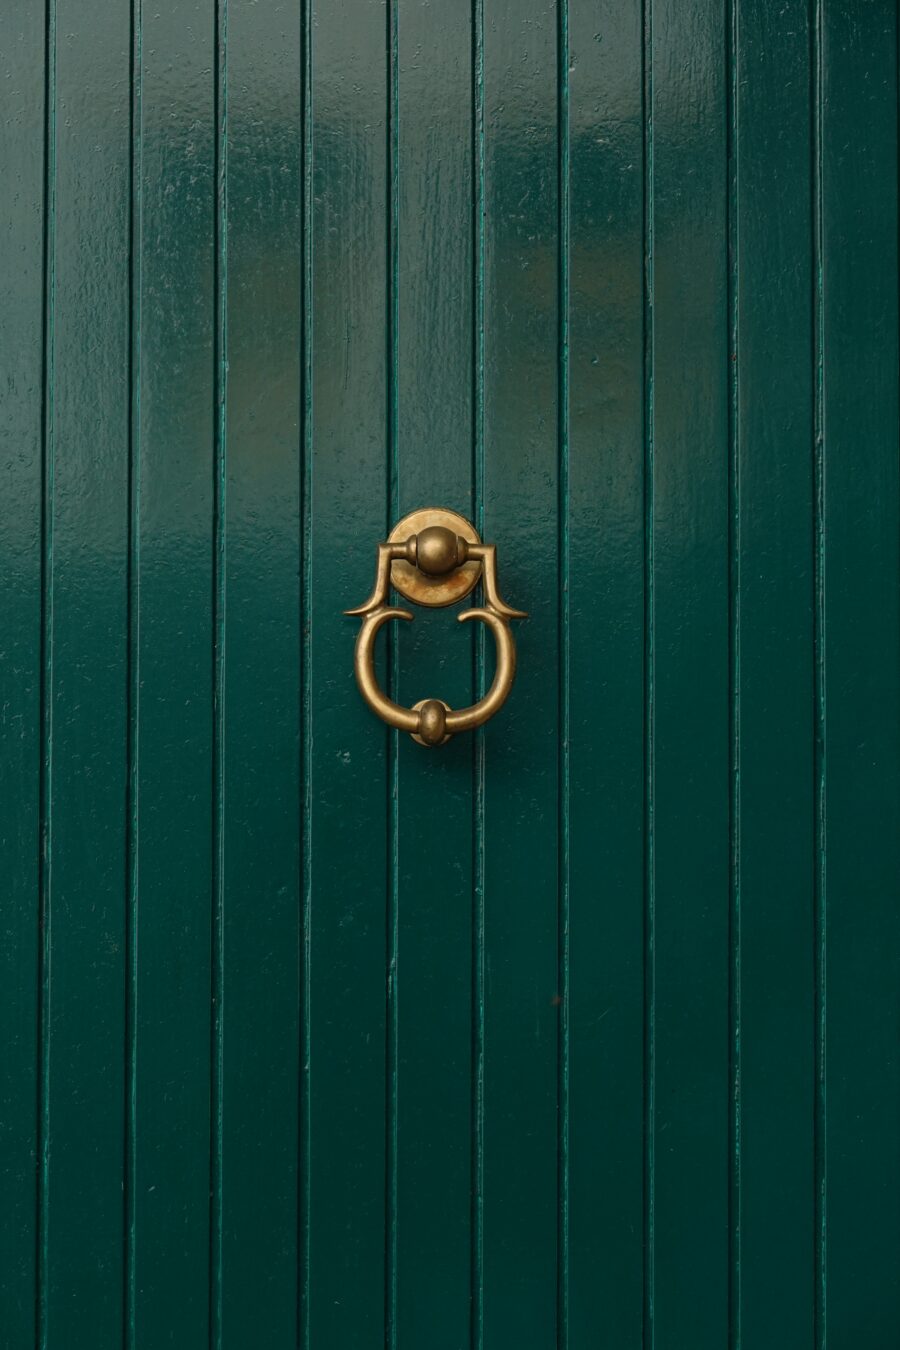 Green door with golden door knocker free stock photo. Portrait orientation.